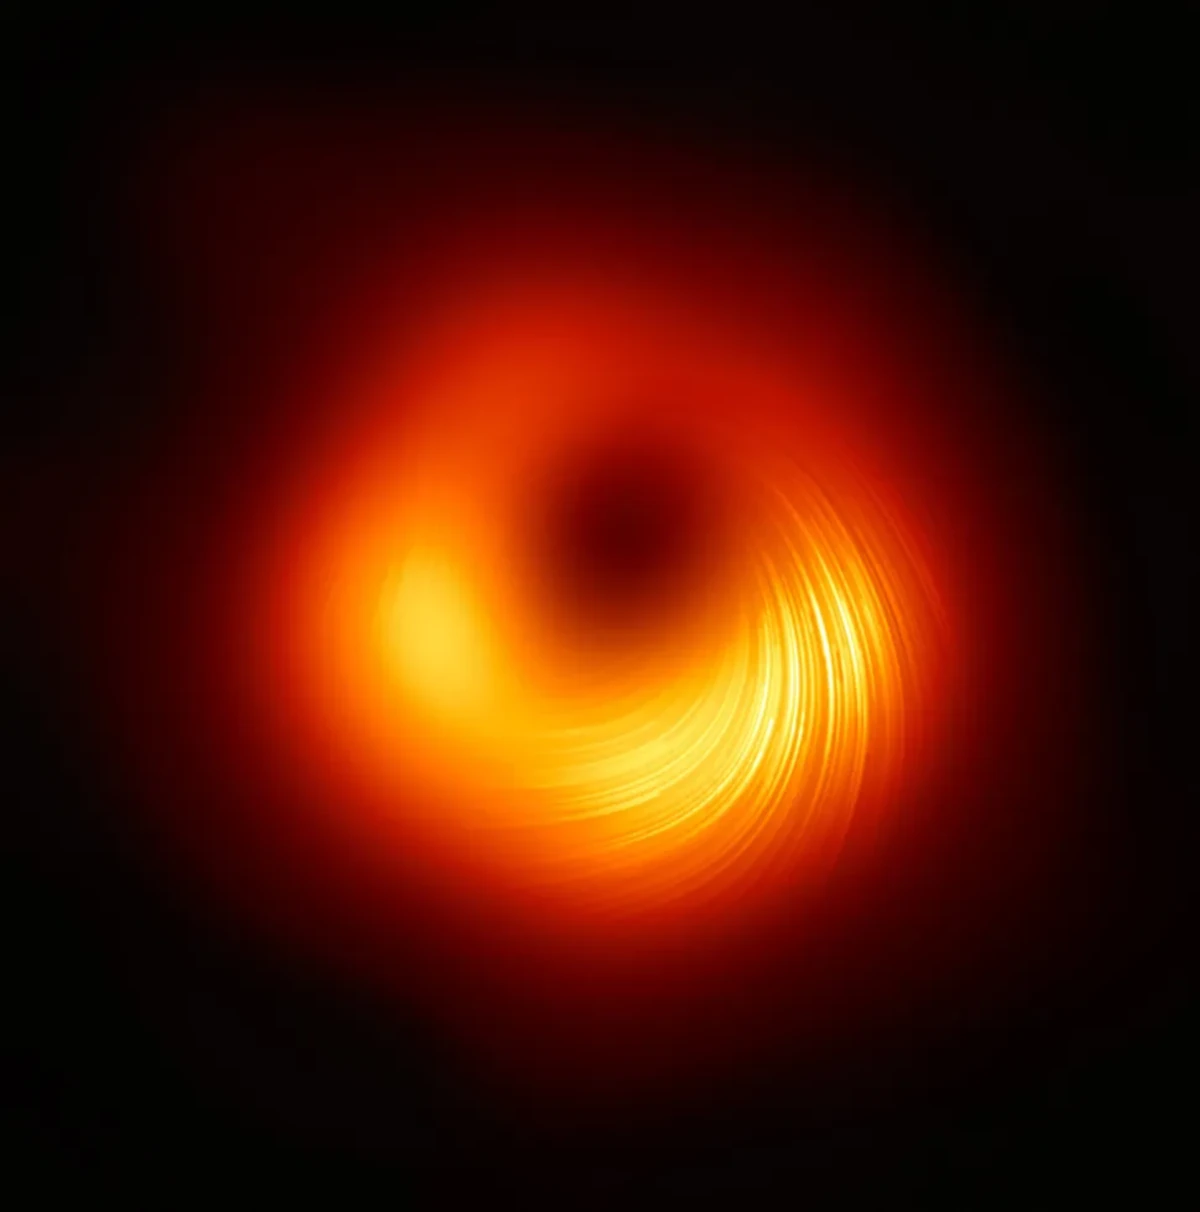 Les études concernant le trou noir M87* ont conduit à une meilleure compréhension de la manière dont il consomme ou repousse la matière